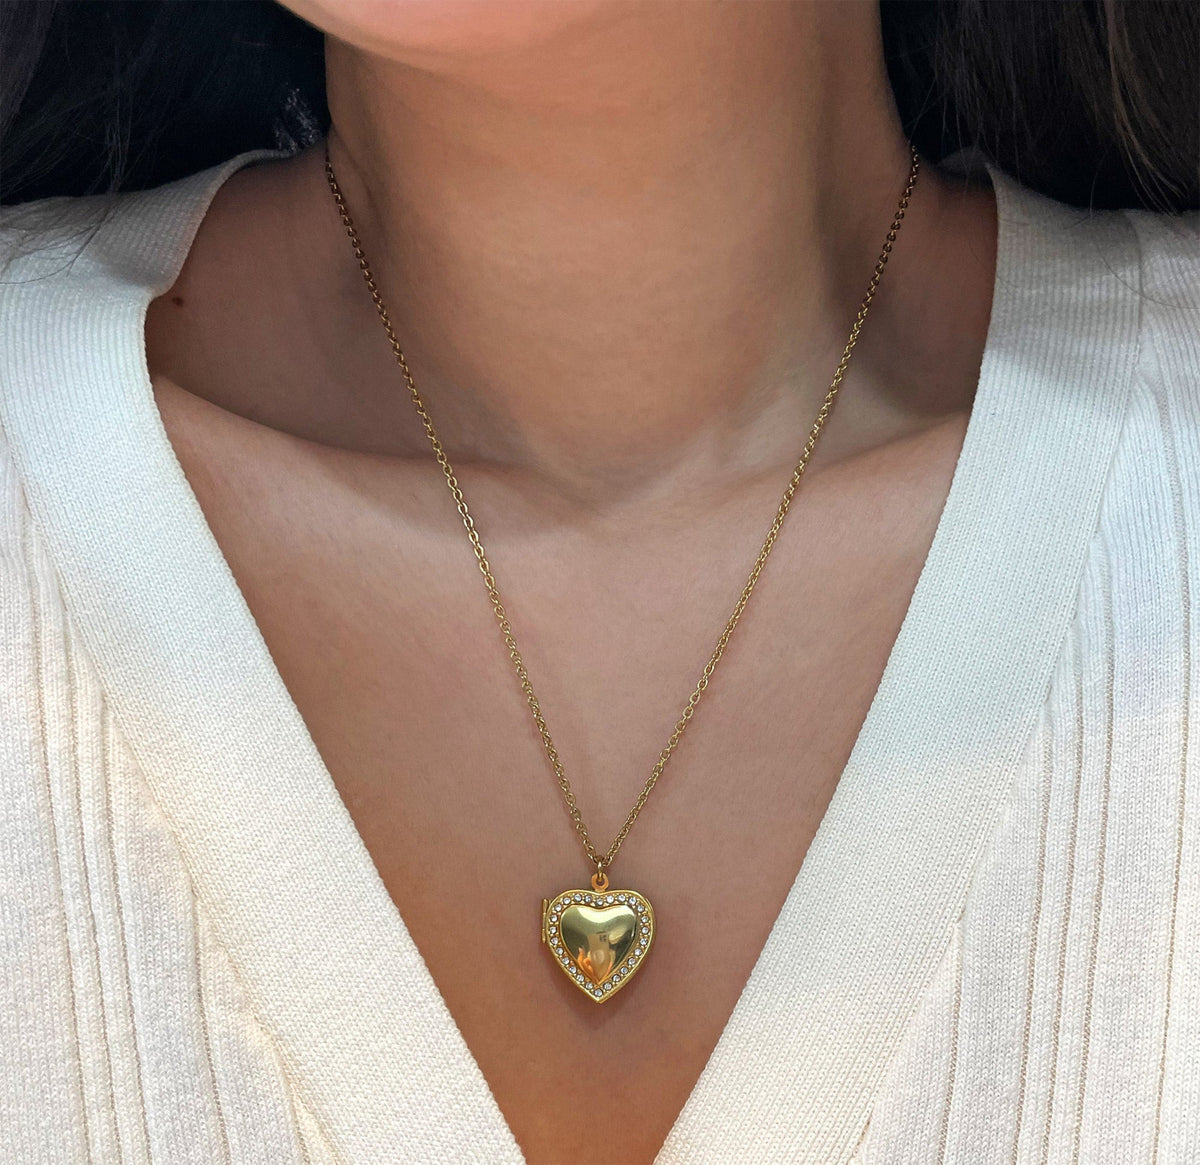 gold heart locket necklace waterproof jewelry